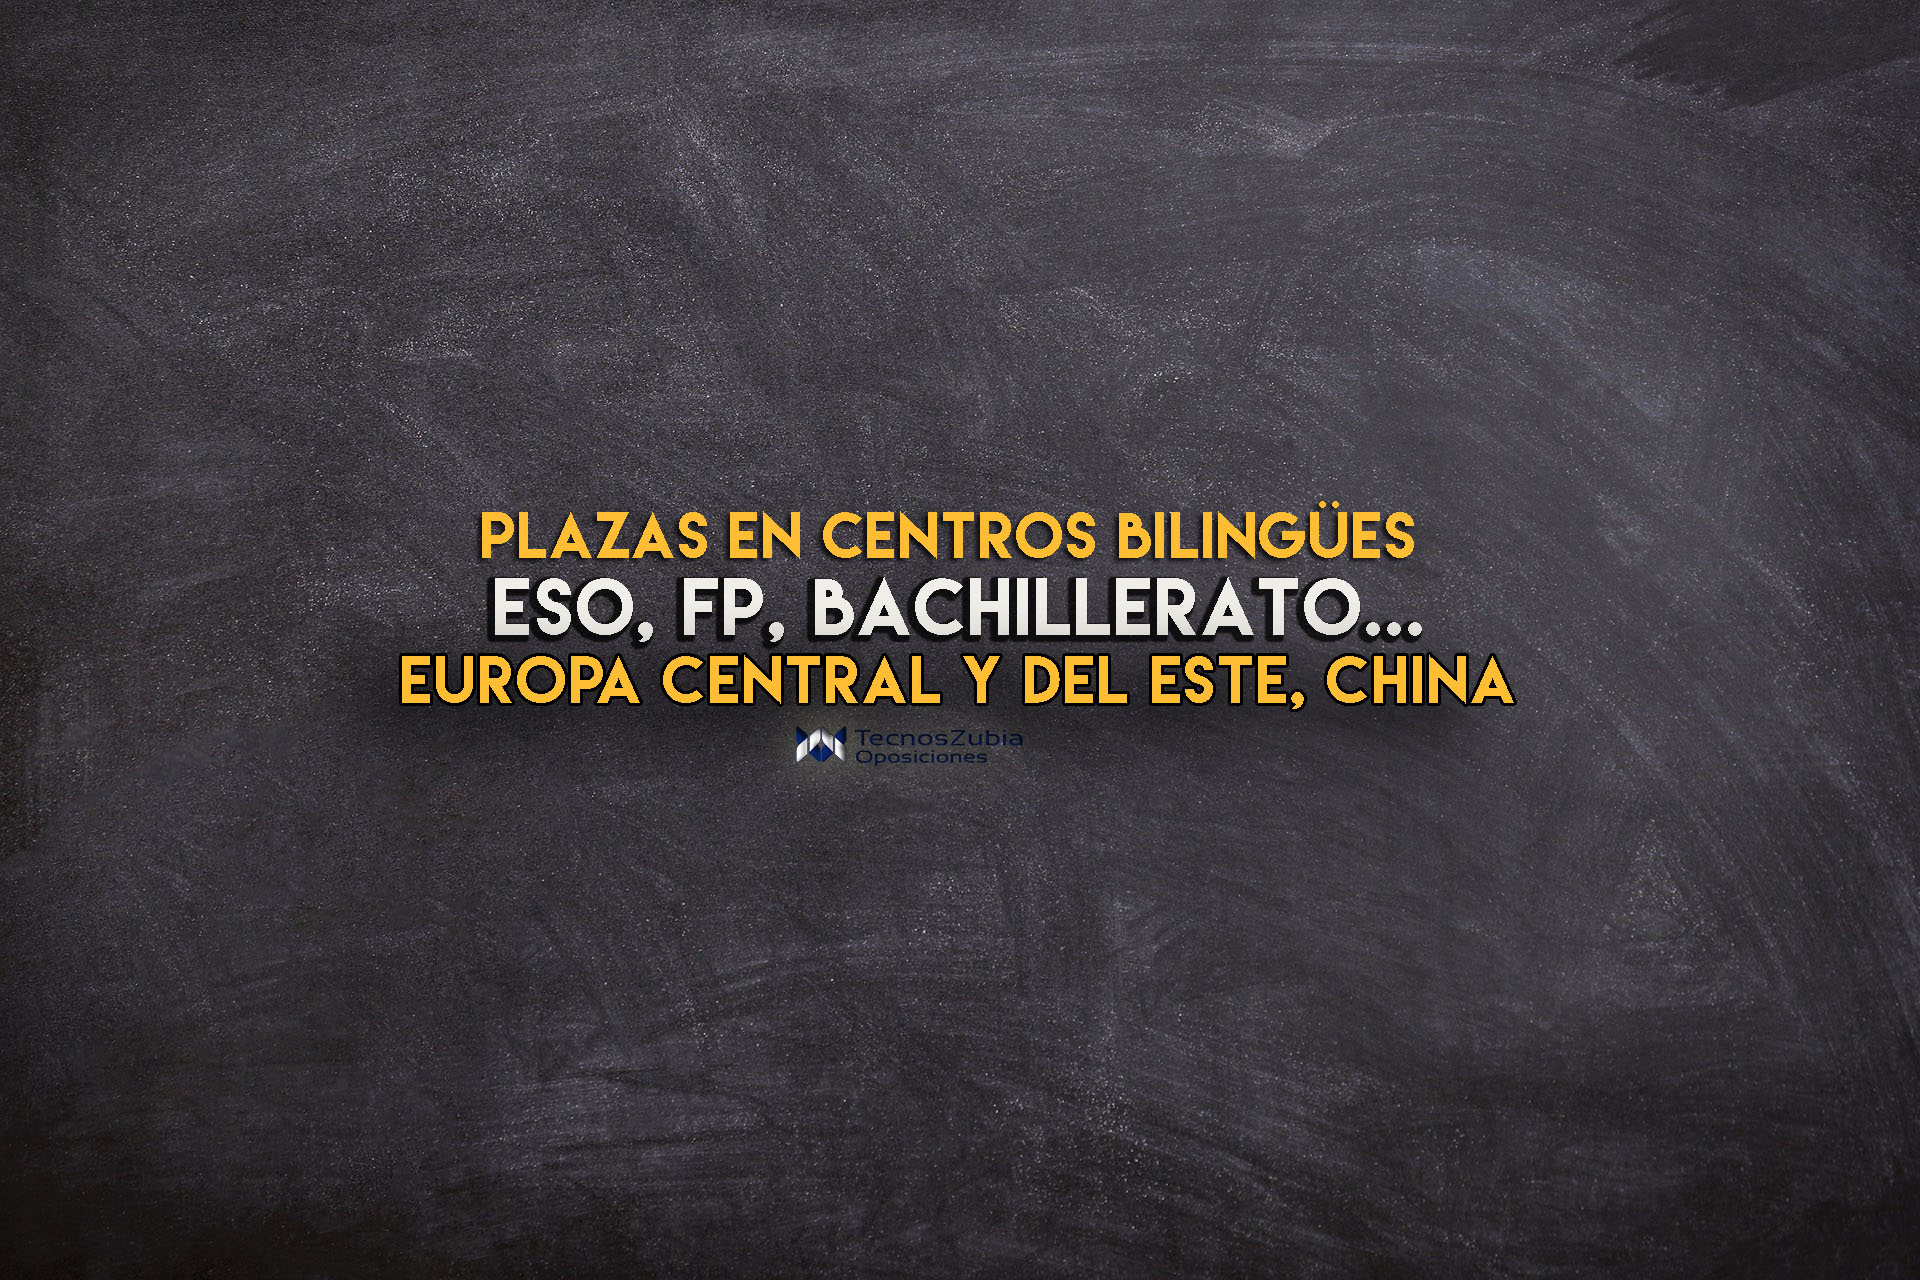 Plazas docentes en centros bilingües